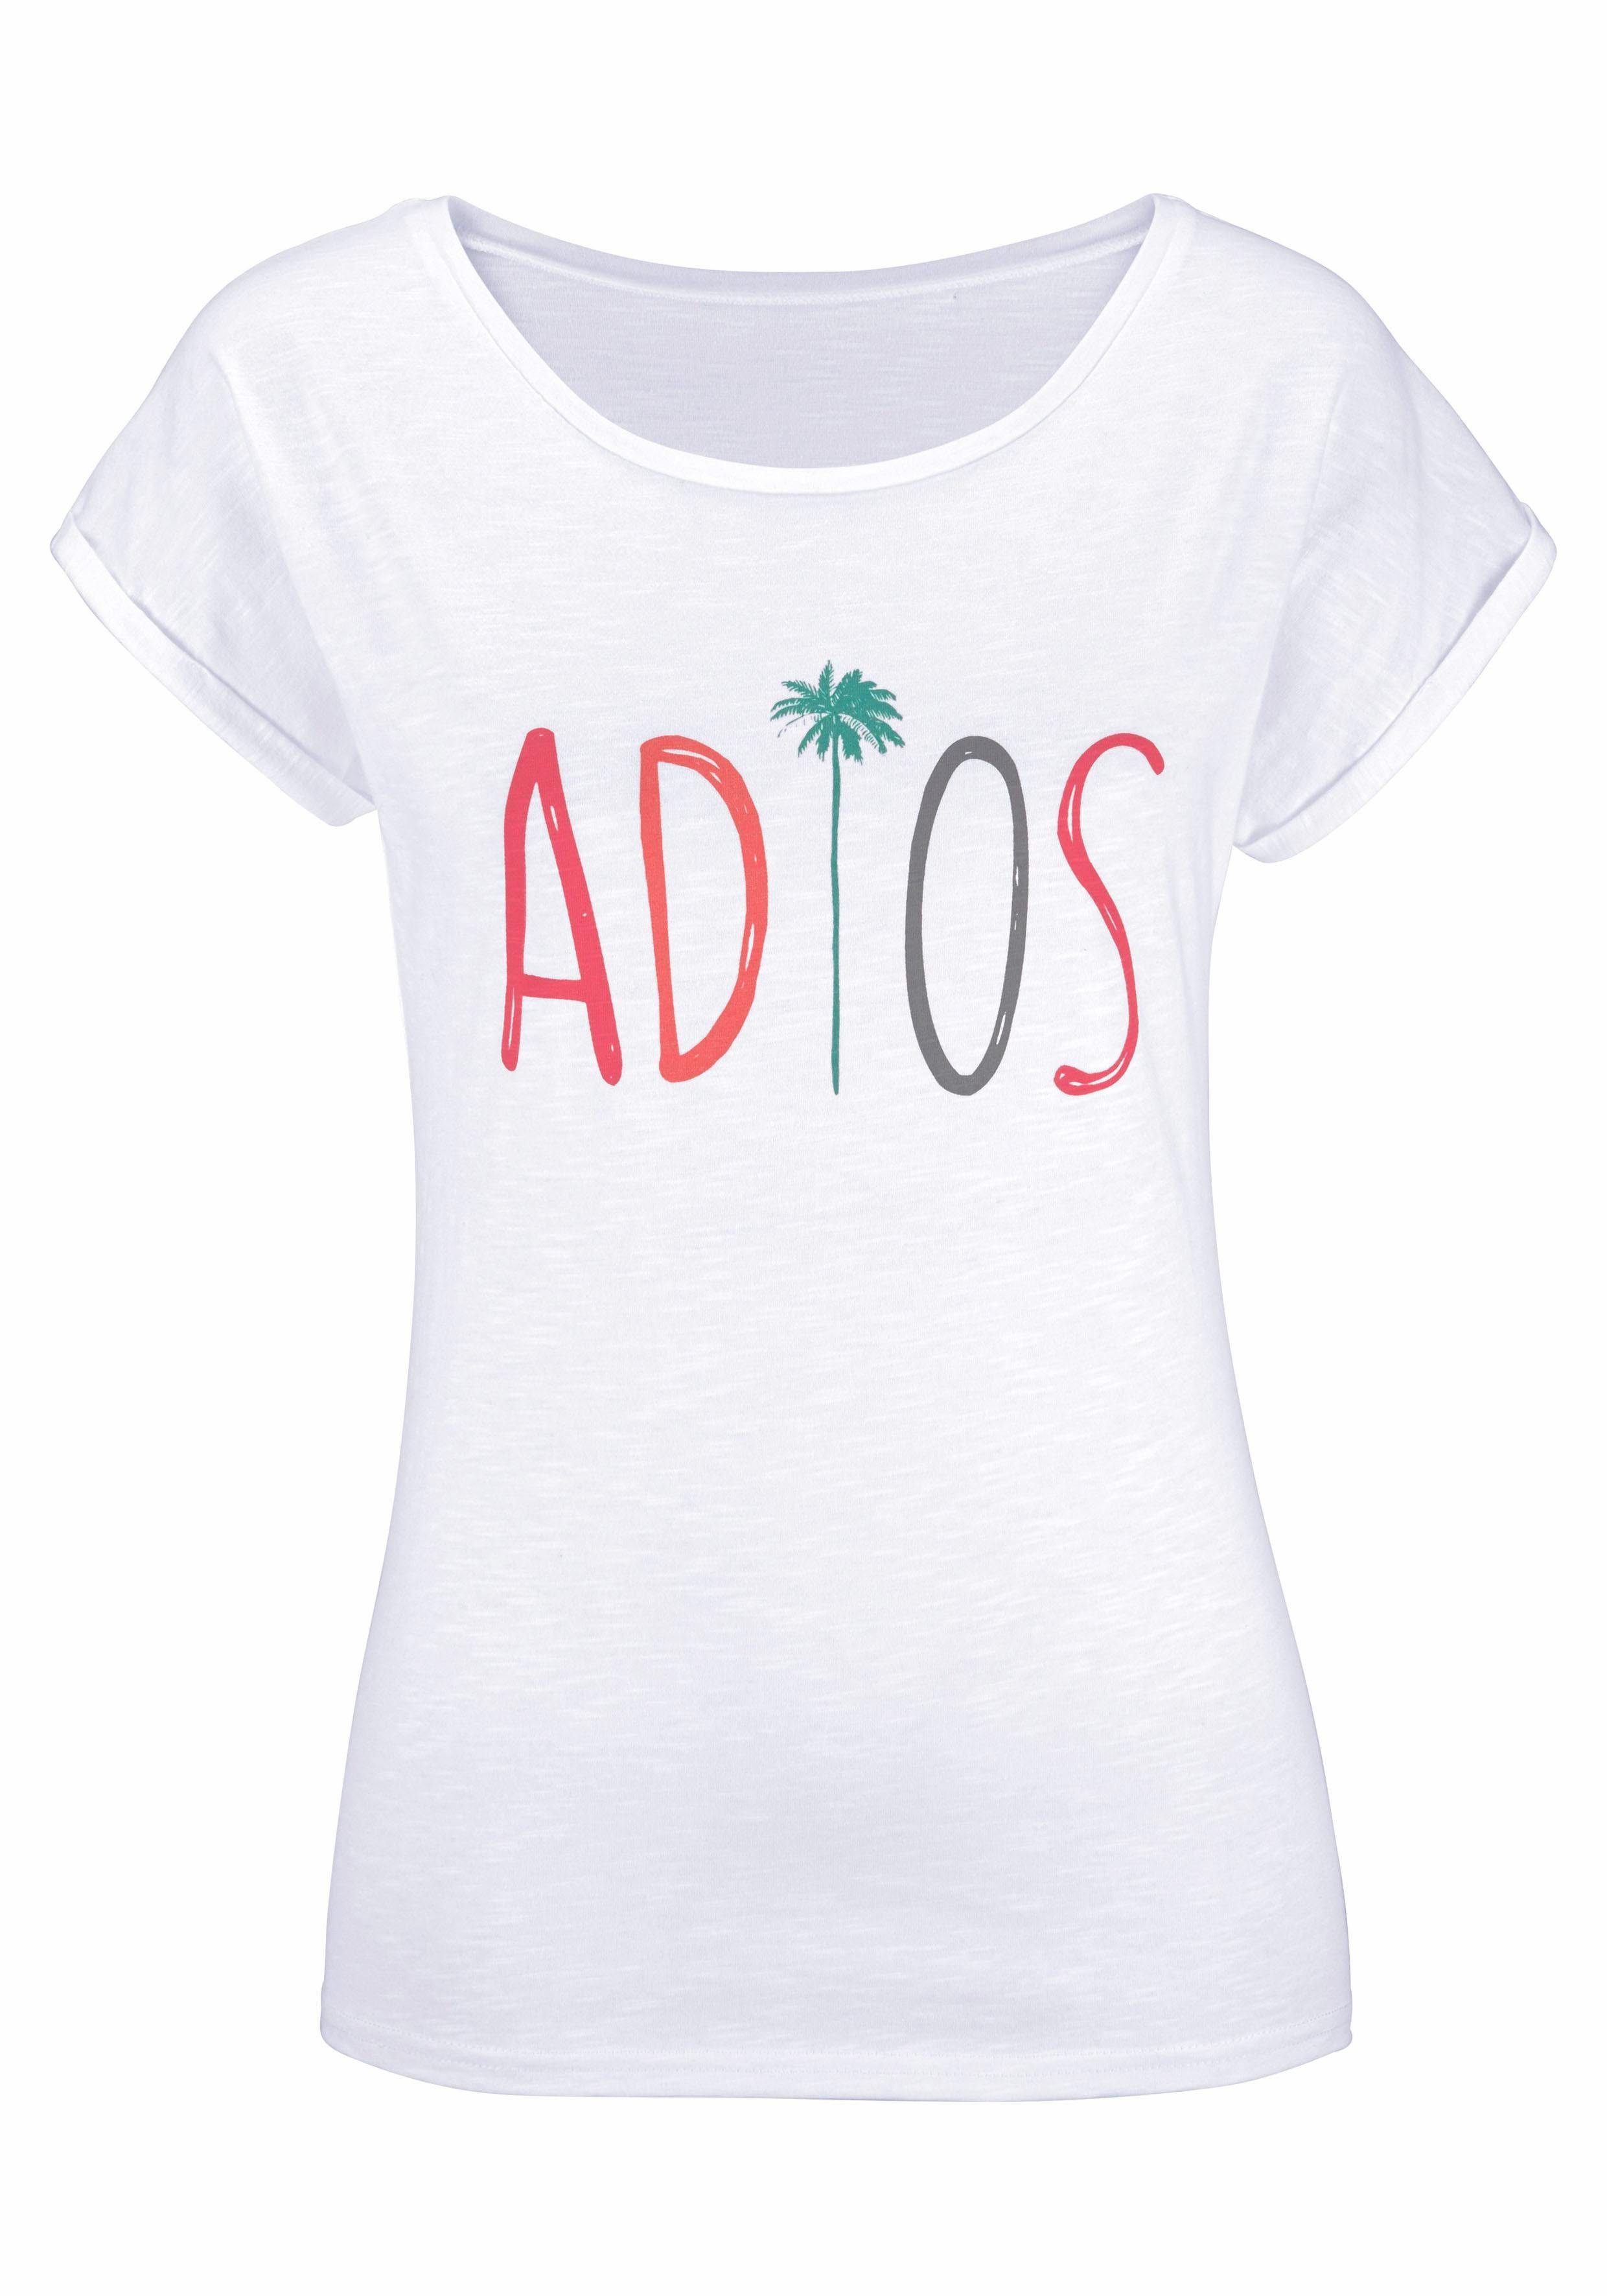 Beachtime modischem "Adios" Frontdruck mit Sprüche T-Shirt